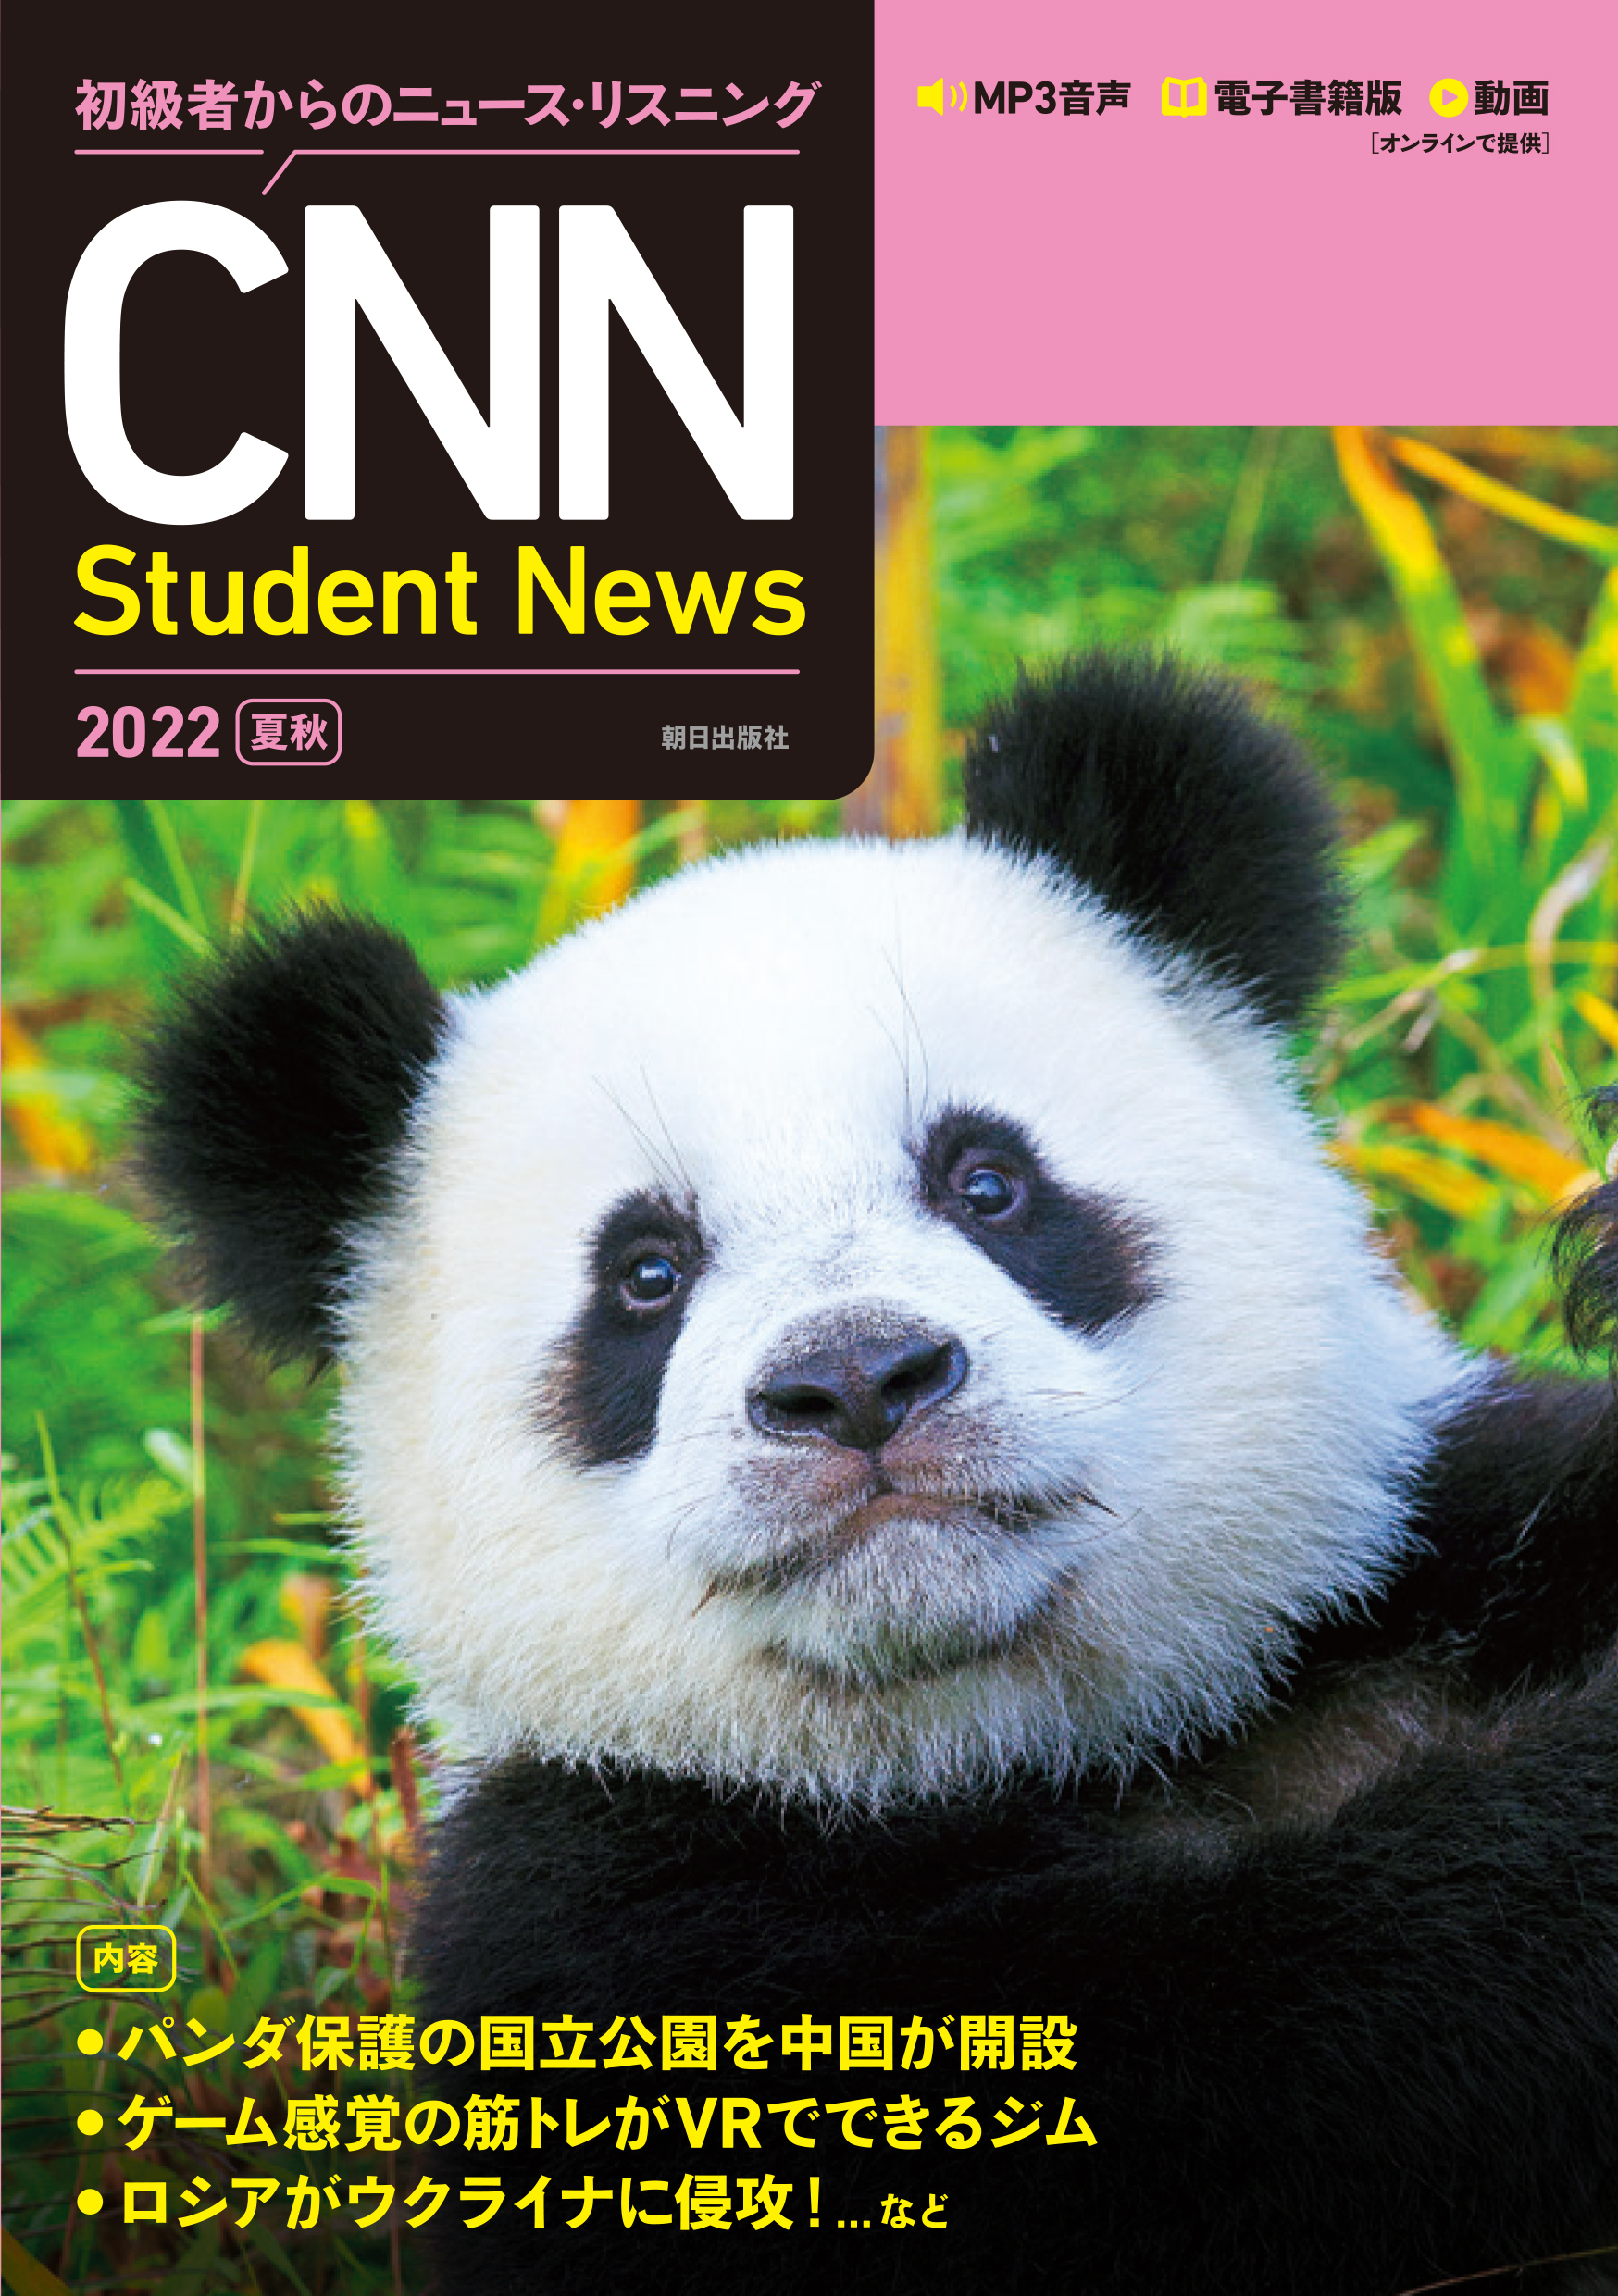 j[AĂwт₷Iw҂̃j[XEXjO CNN Student News 2022[ďH]xI